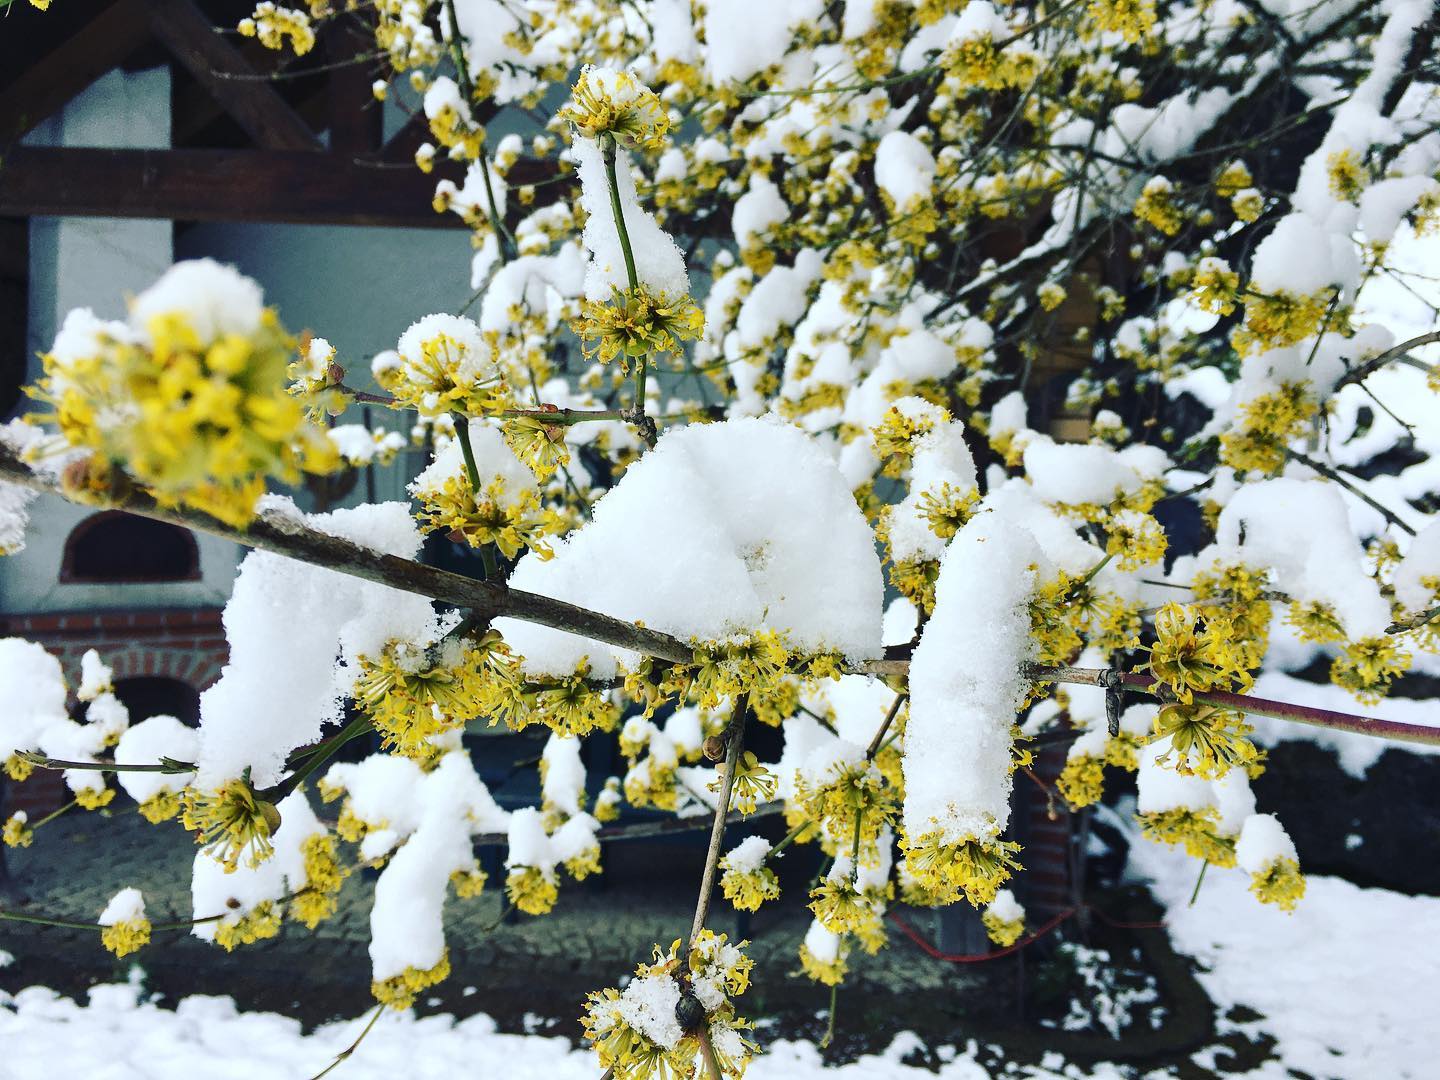 und dann ist alles mit #schnee bedeckt. 
#biene #carnica #bioaustria